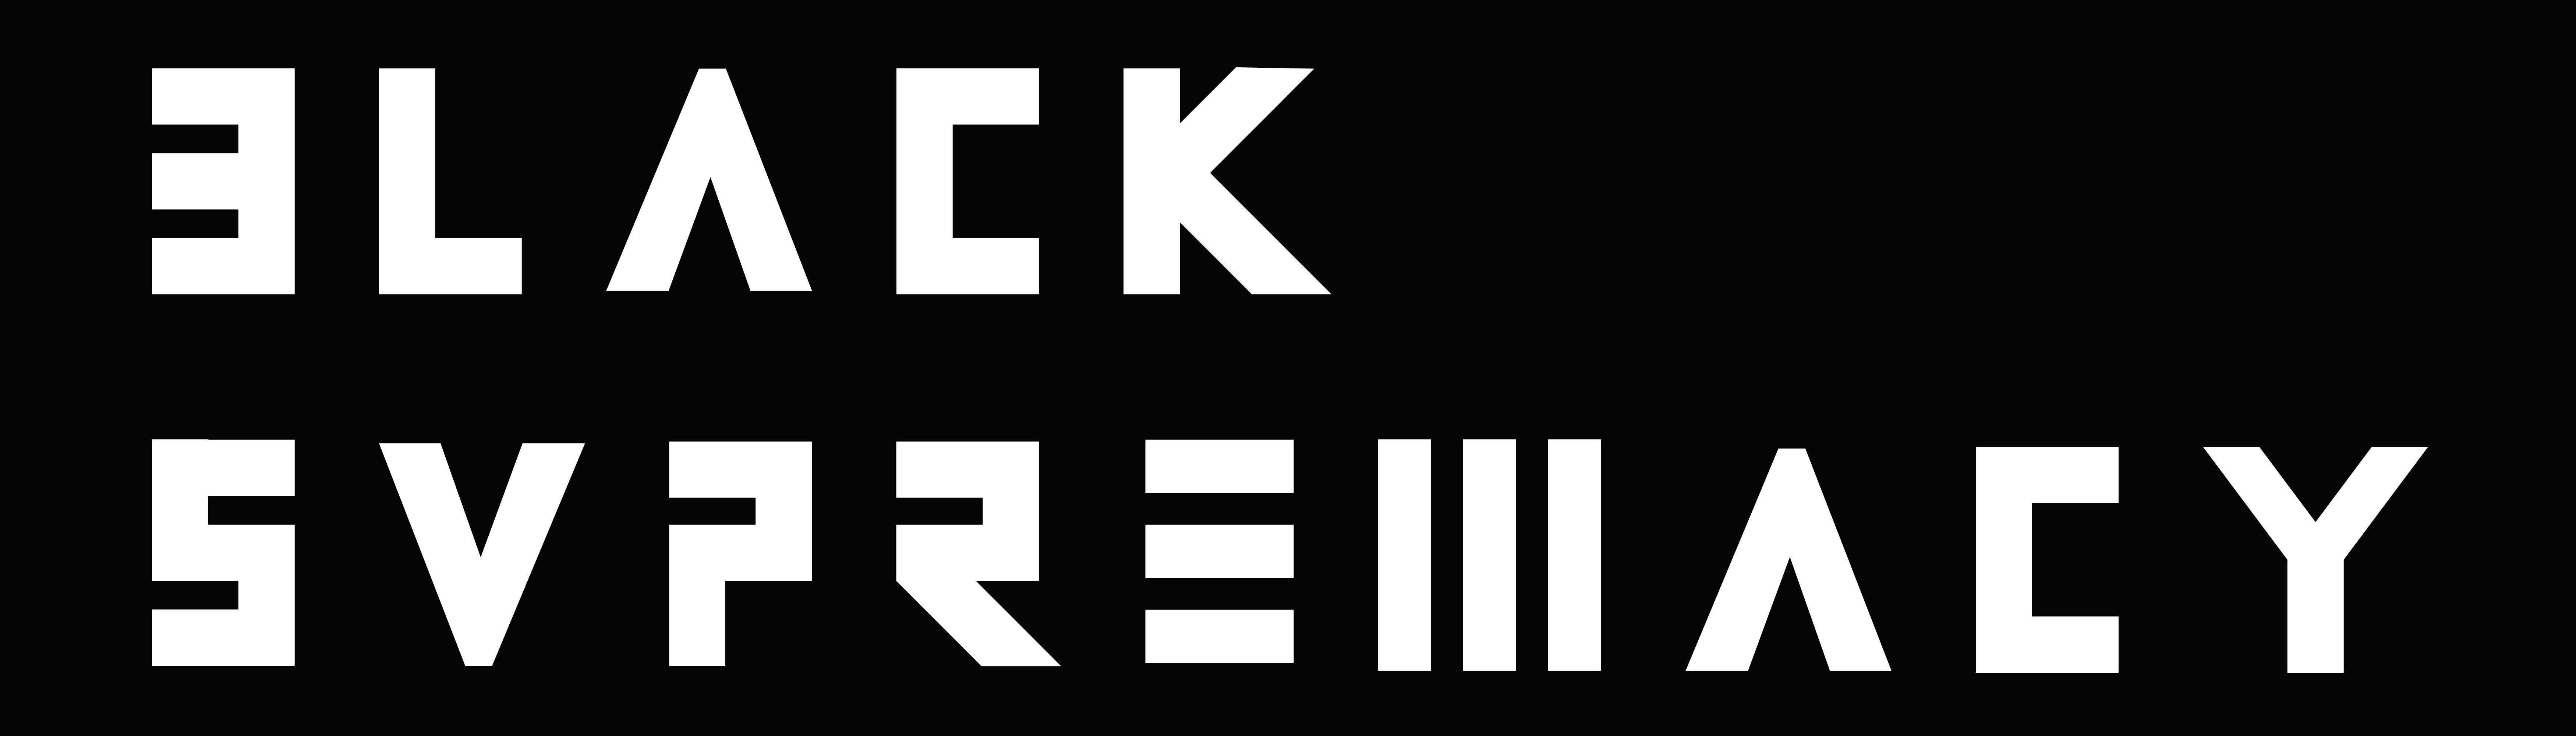 Supremacy Logo - BS logo black A M A E L official website